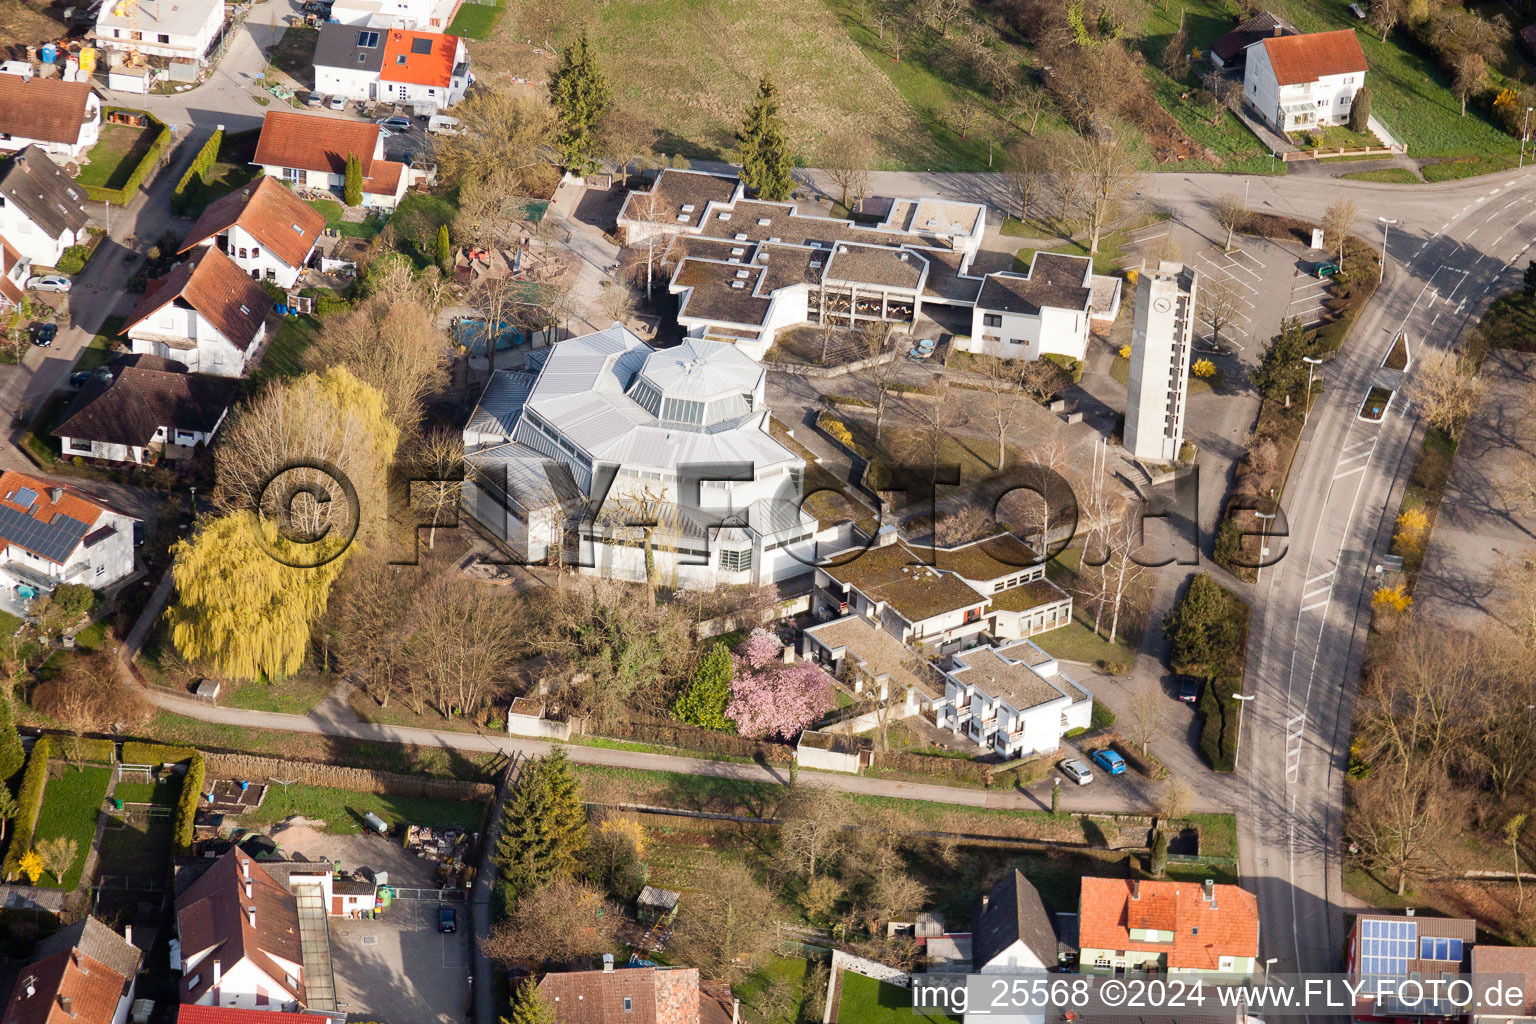 Vue aérienne de Clocher et toit de la tour de l'église du quartier d'Illingen-Illingen à Elchesheim dans le département Bade-Wurtemberg, Allemagne